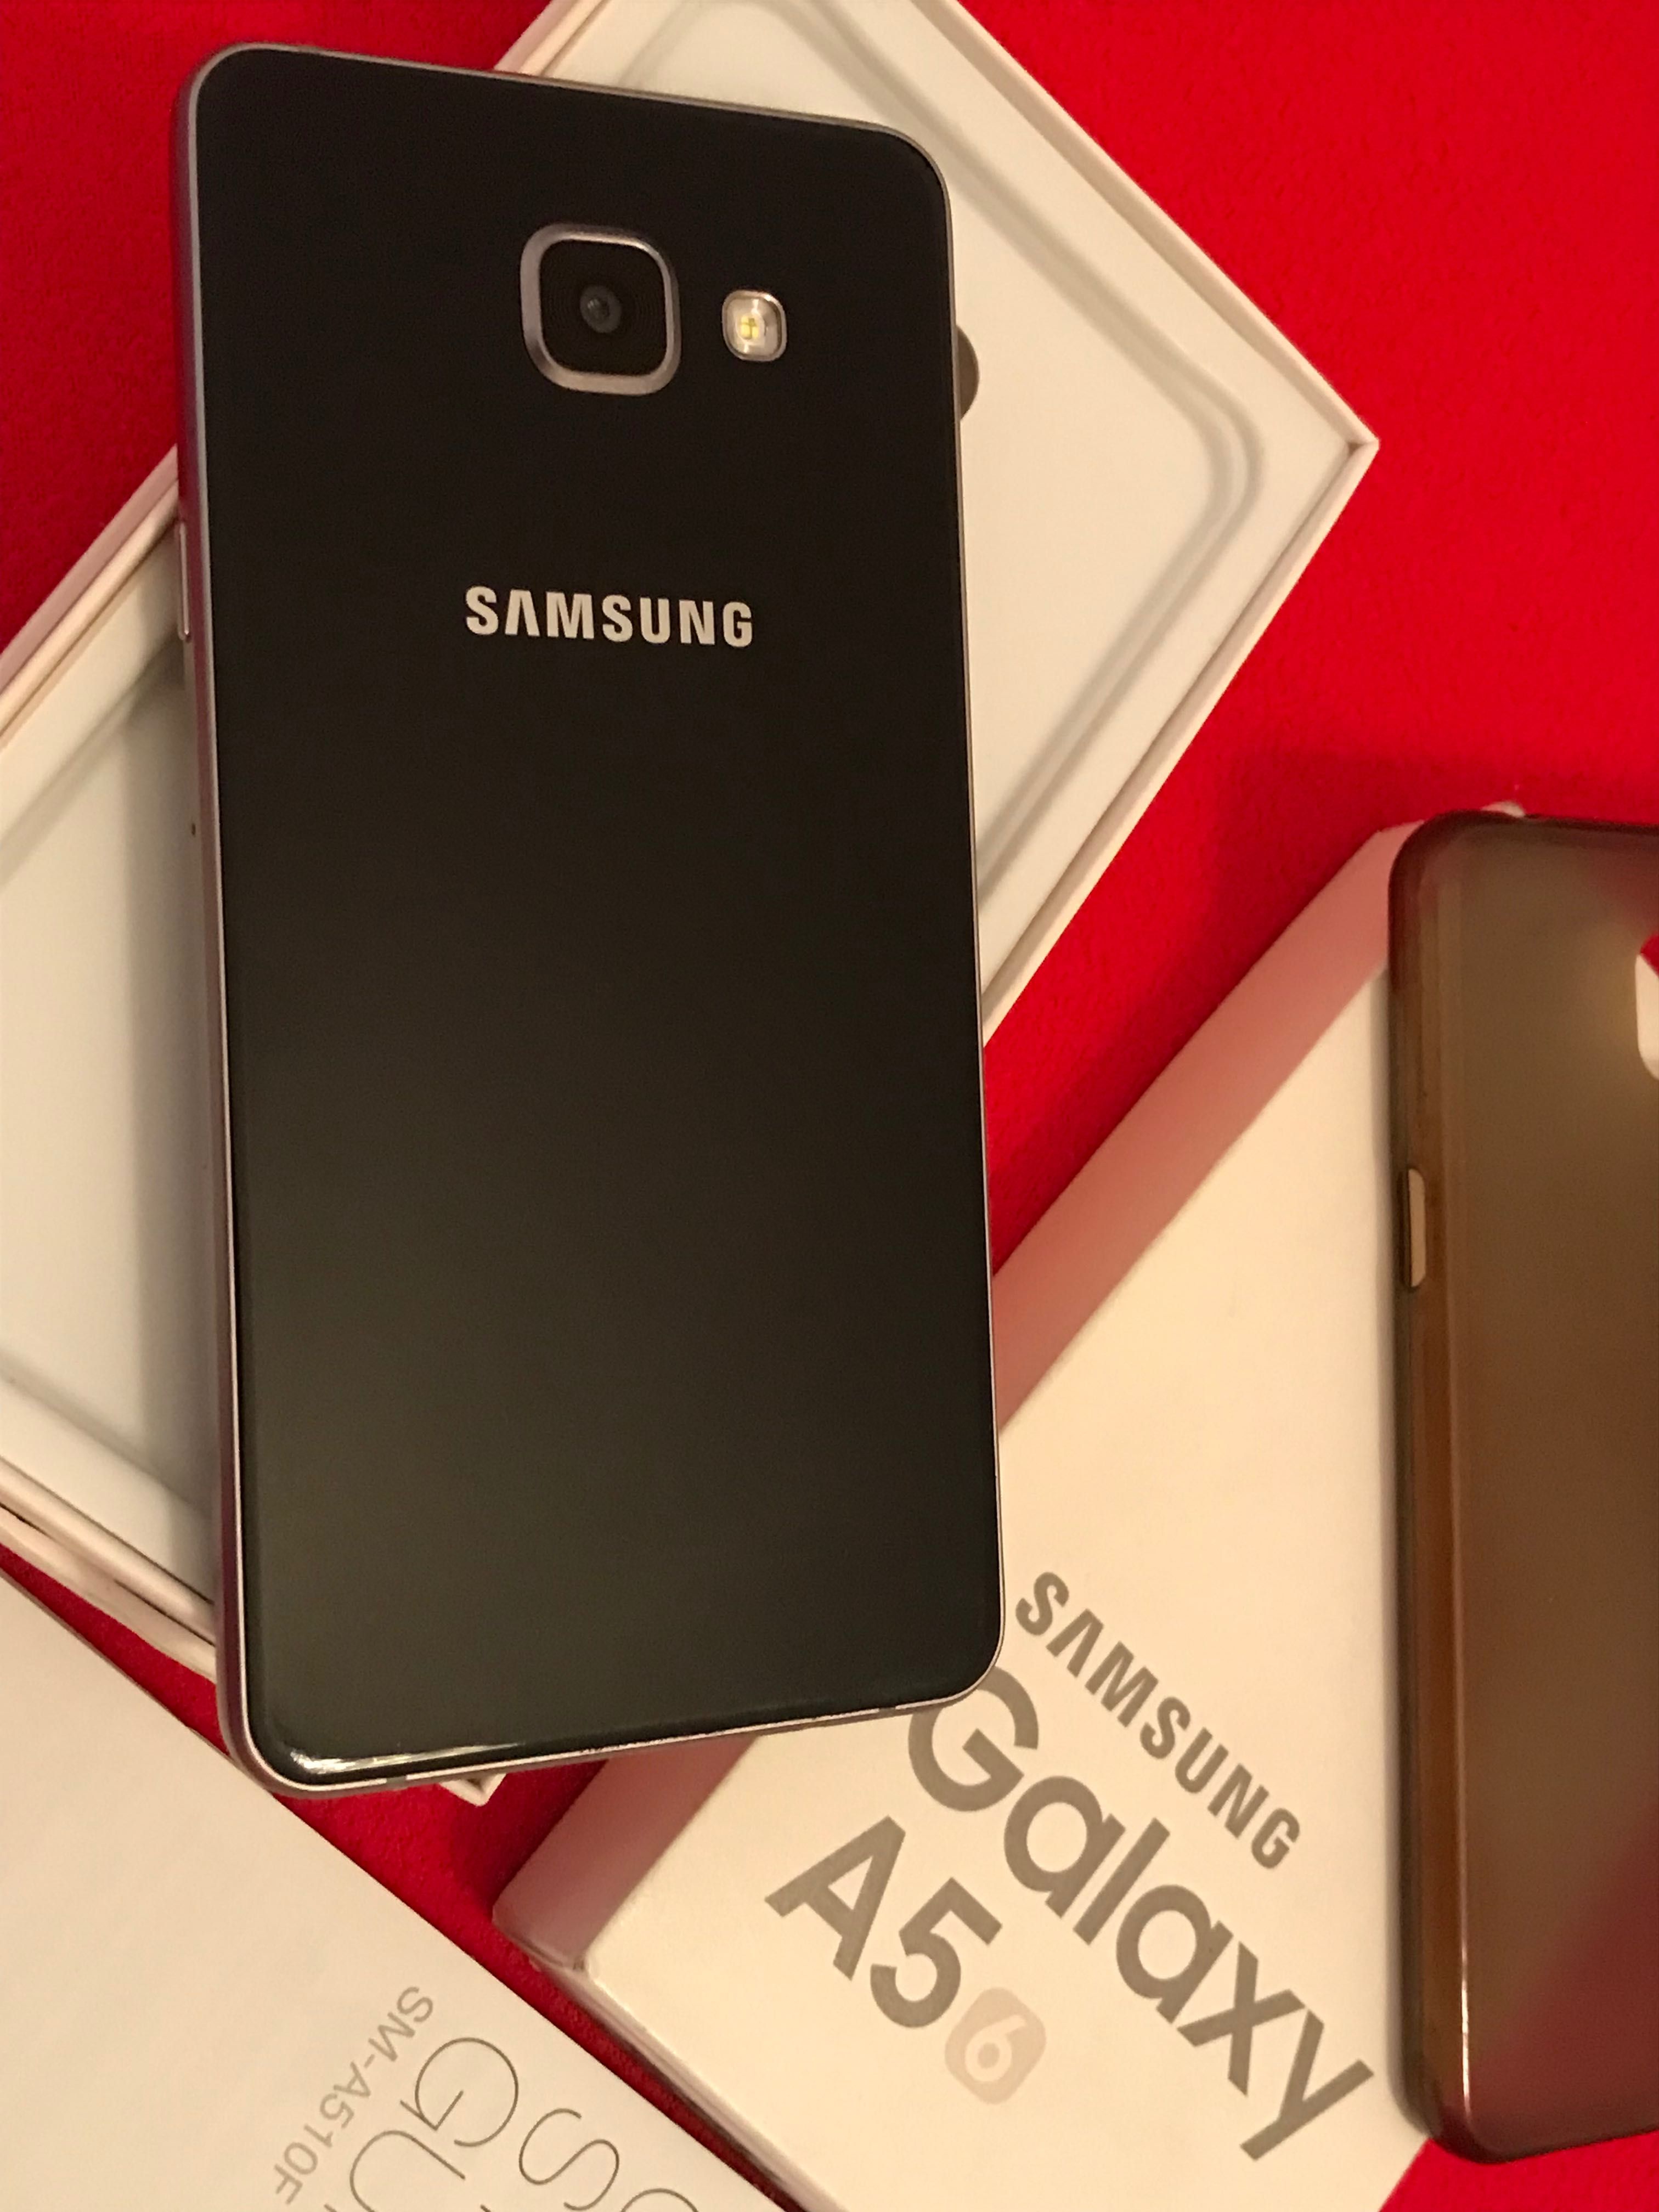 AVARIADO - PEÇAS Smartphone- Samsung A5 / 6 (Avariado) ecrã não liga.